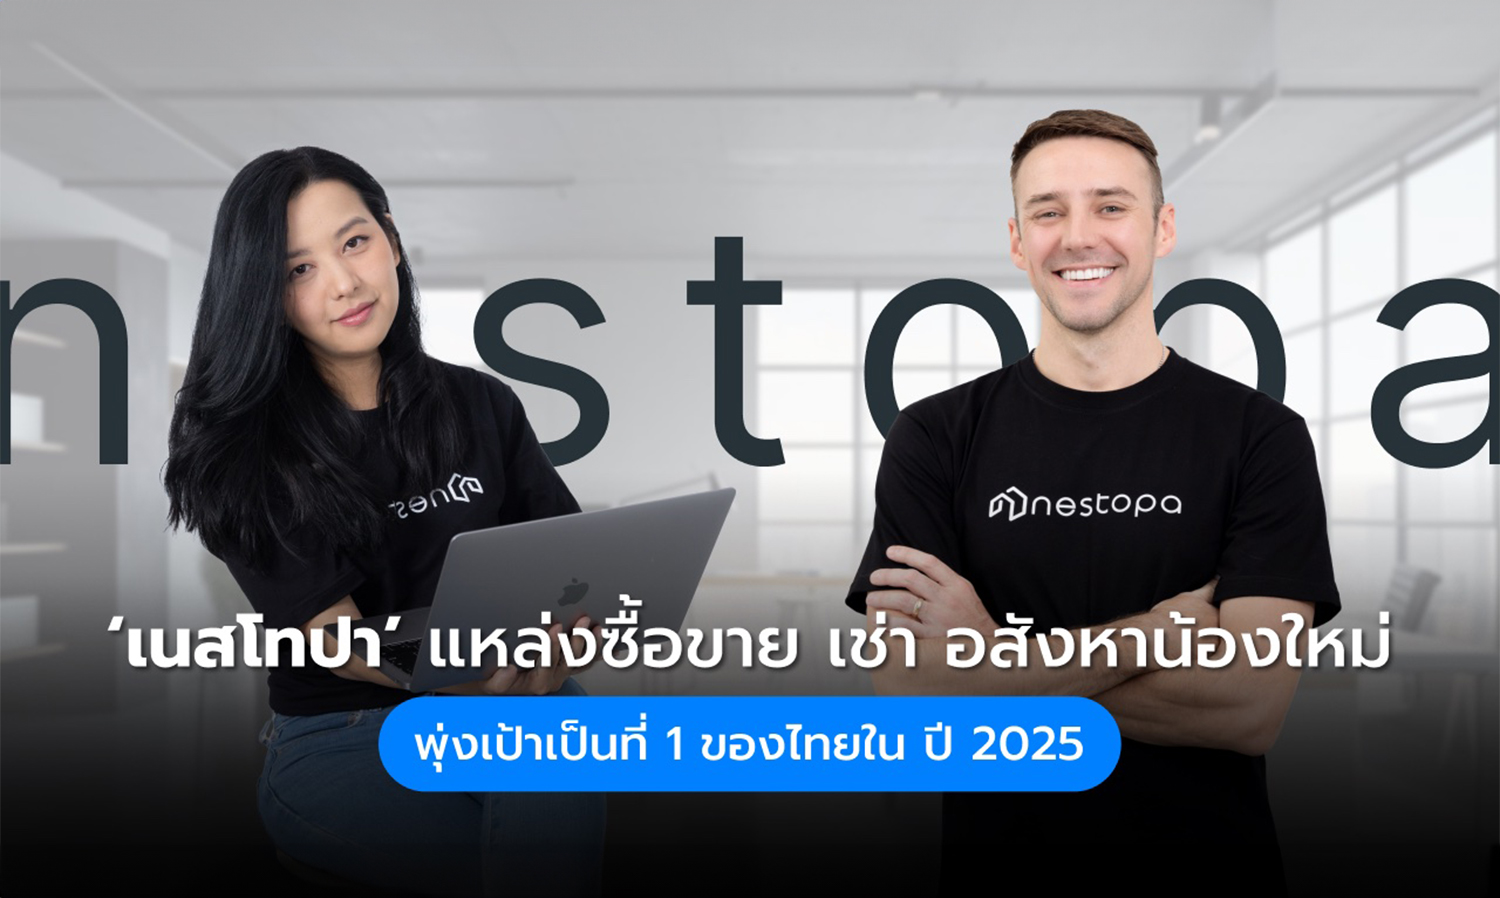 Nestopa แหล่งซื้อ-ขาย-เช่า อสังหาฯ น้องใหม่ เปิดตัวแพลตฟอร์ม หวังตอบโจทย์ผู้ใช้ทุกกลุ่ม ตั้งเป้าอันดับ 1 ของไทยภายในปี’ 68